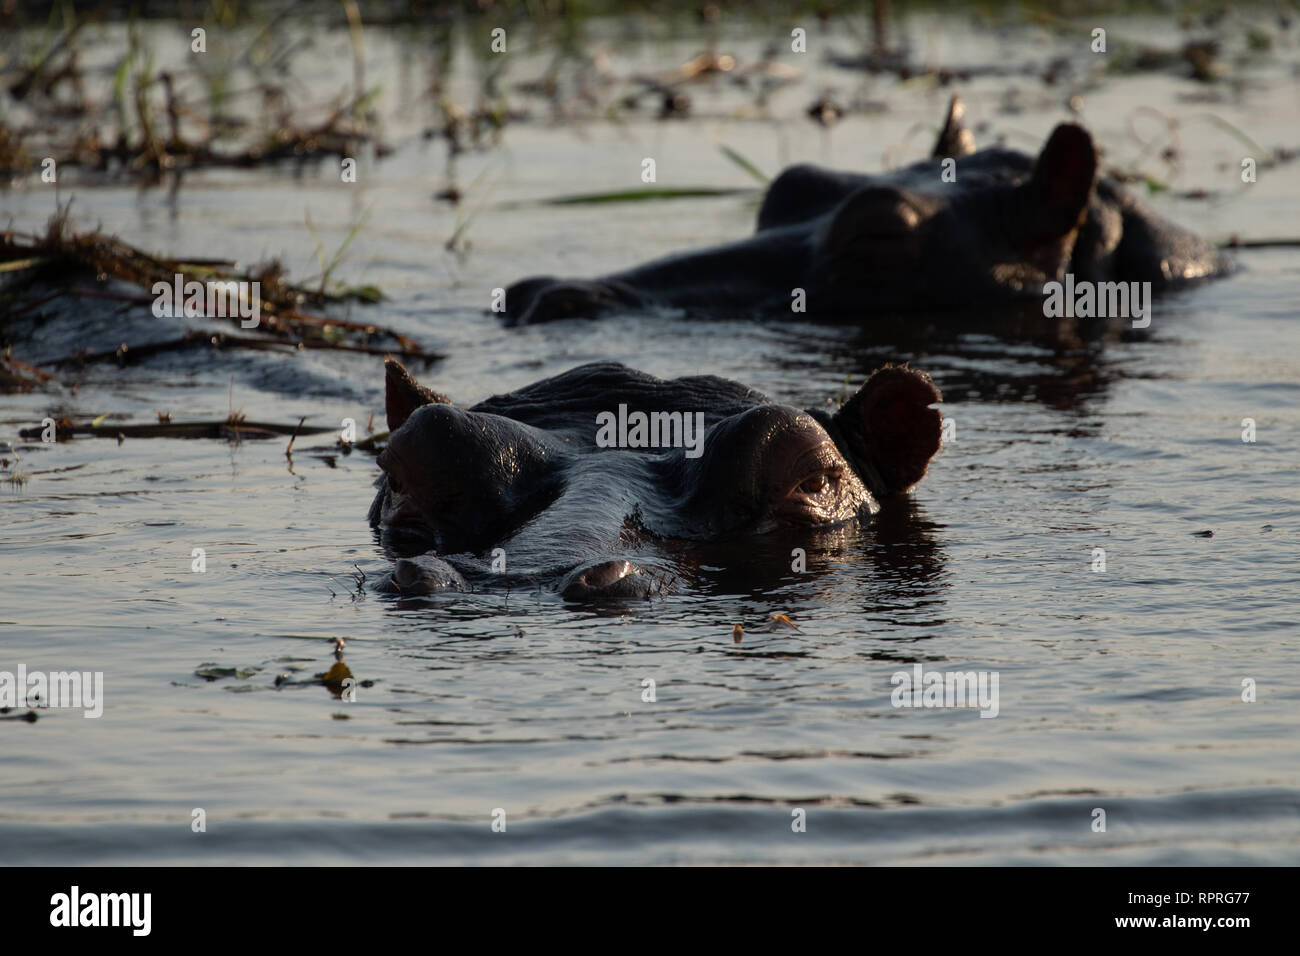 Hippo (Hippopotamus amphibius) resting in the water, Chobe National Park in Botswana Stock Photo